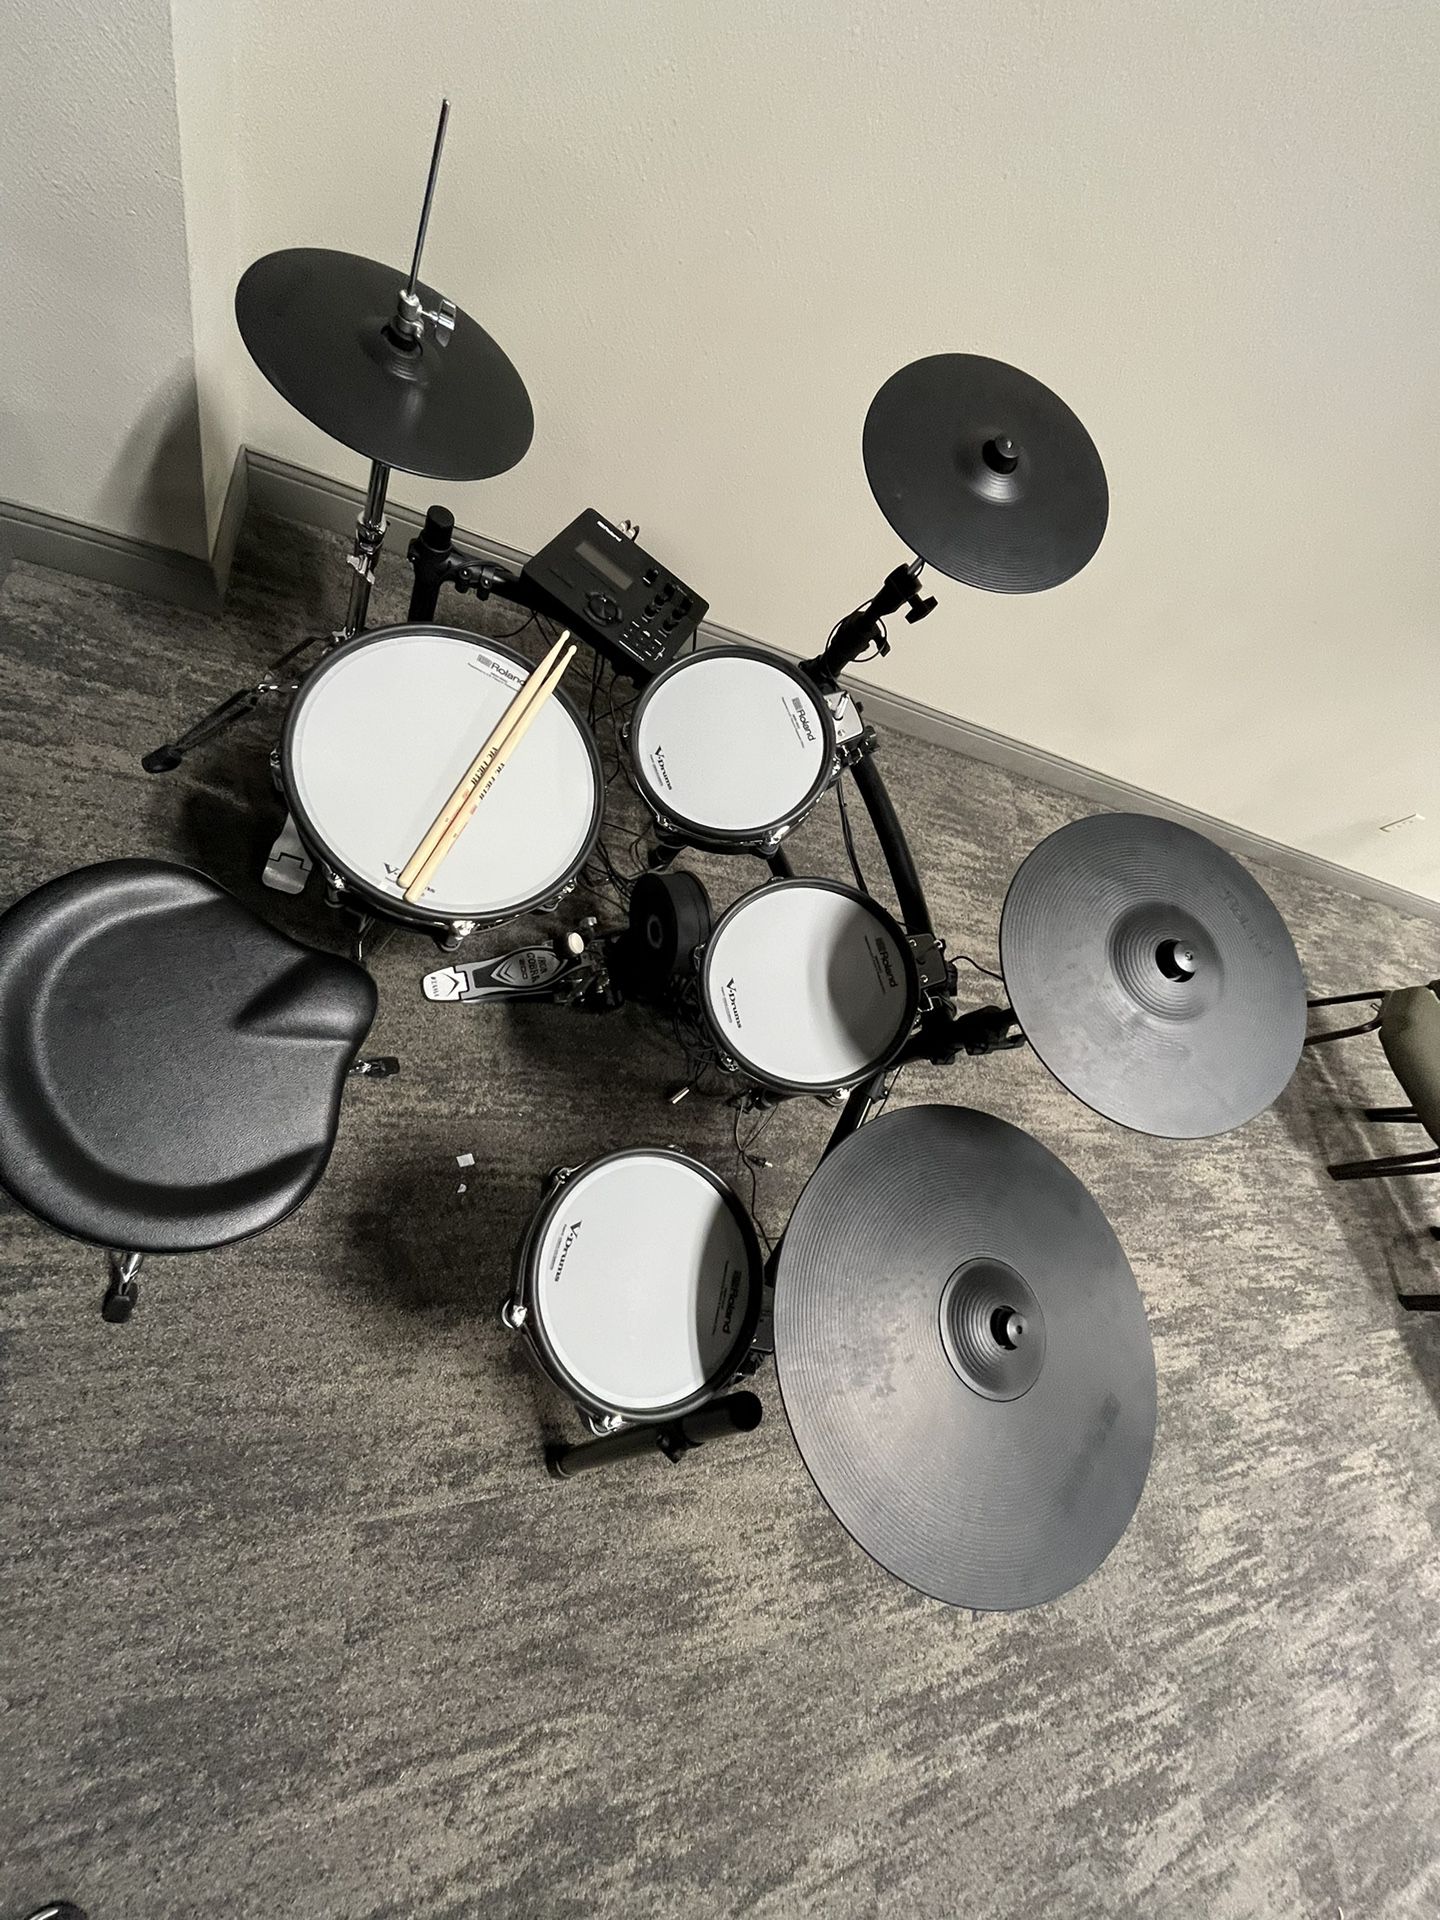 Roland TD-27 Electronic Drum Set V-drums